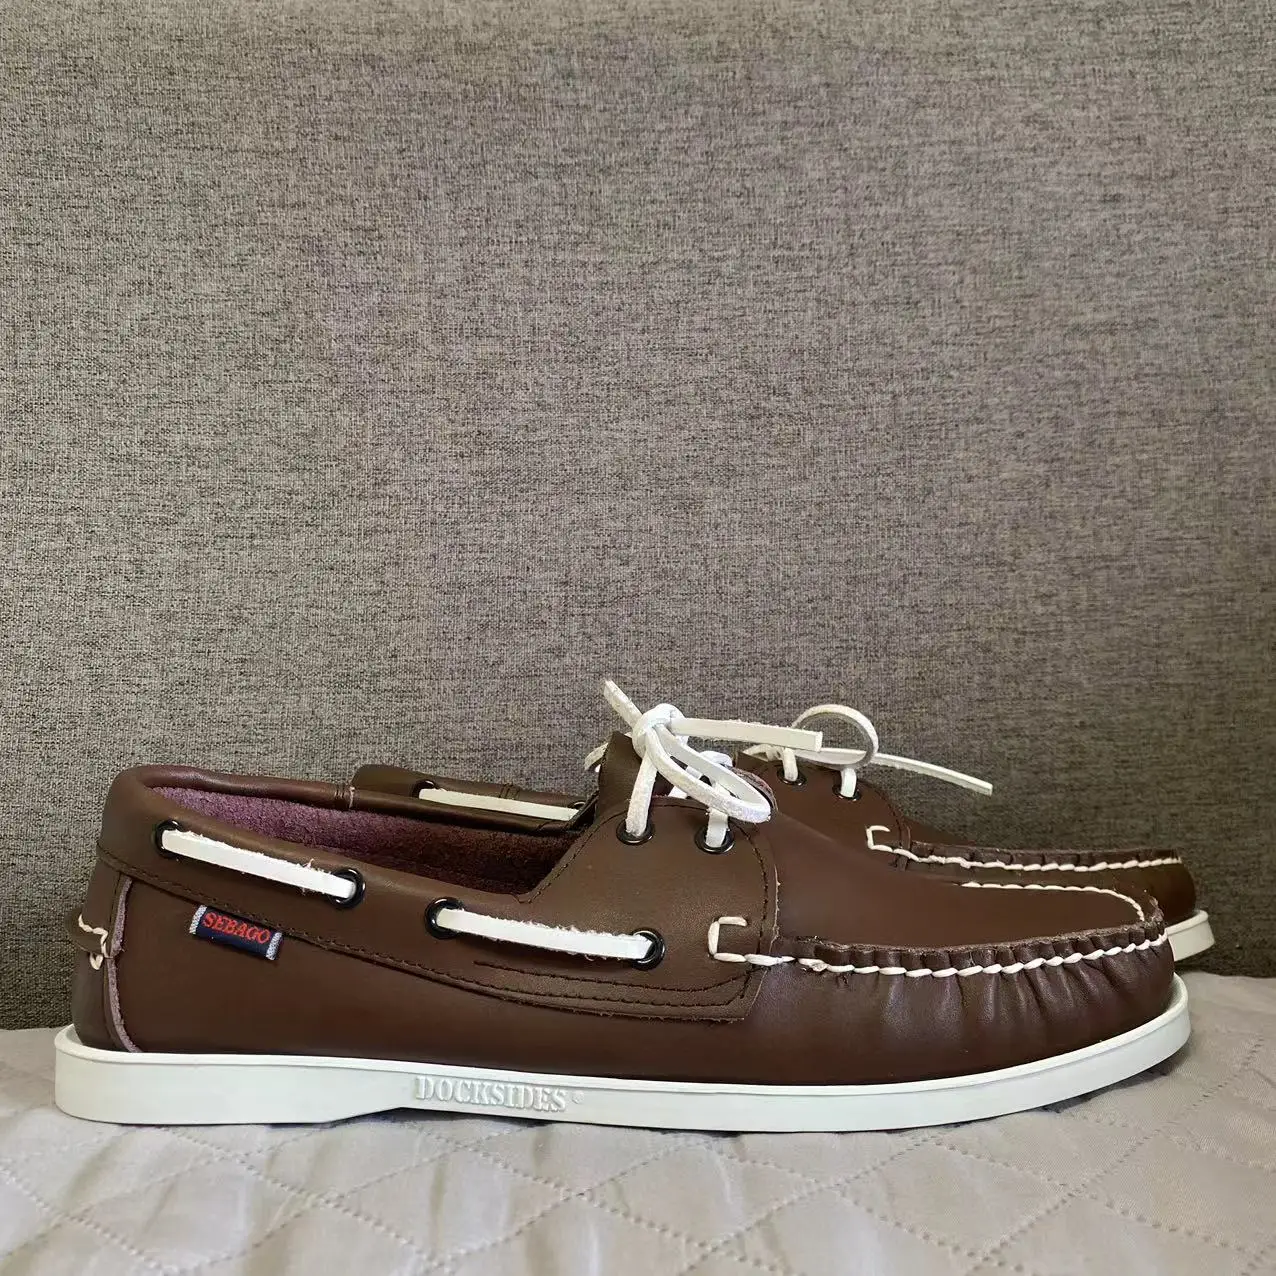 Men Homme Authentic Docksides Shoes - Premium Leather Moc Toe Lace Up Boat Shoes 2024H20